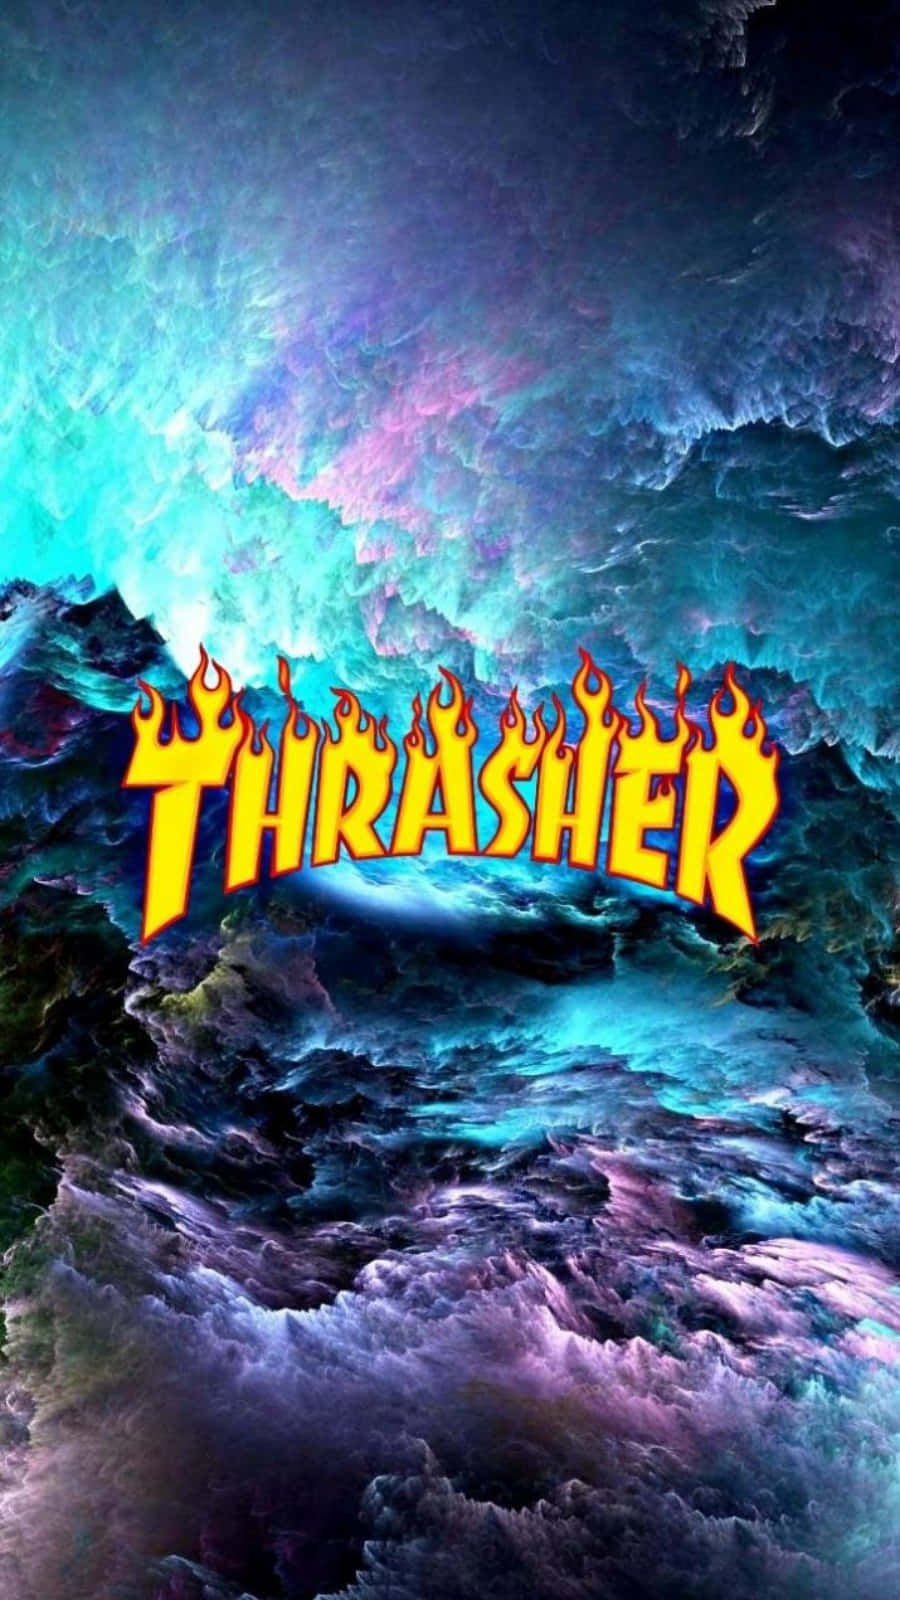 Thrasherthrasher - Thrasher - Thrasher - Thrasher - Th